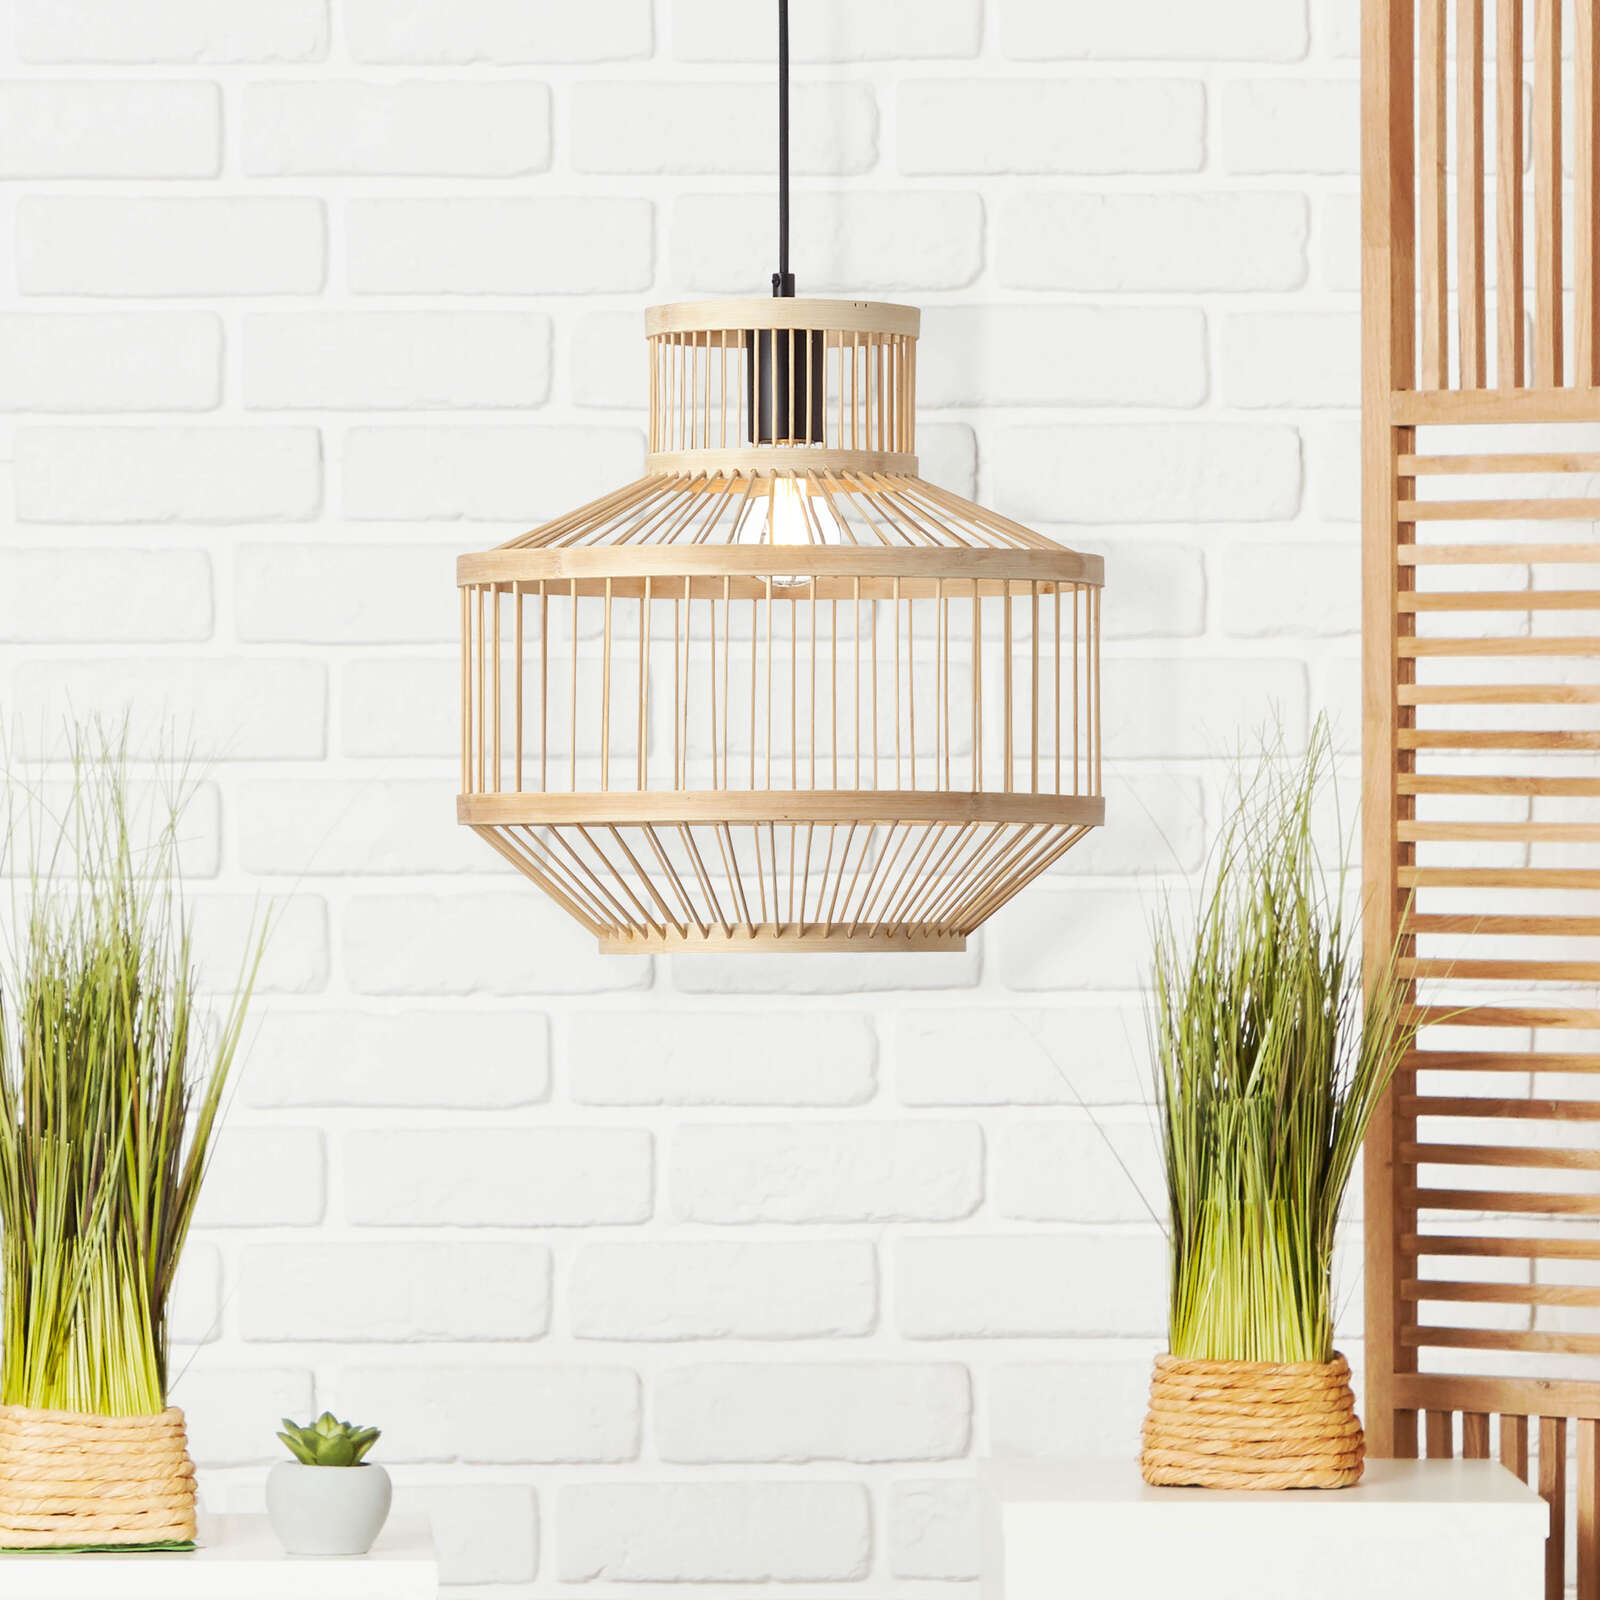             Bamboe hanglamp - Philipp - Bruin
        